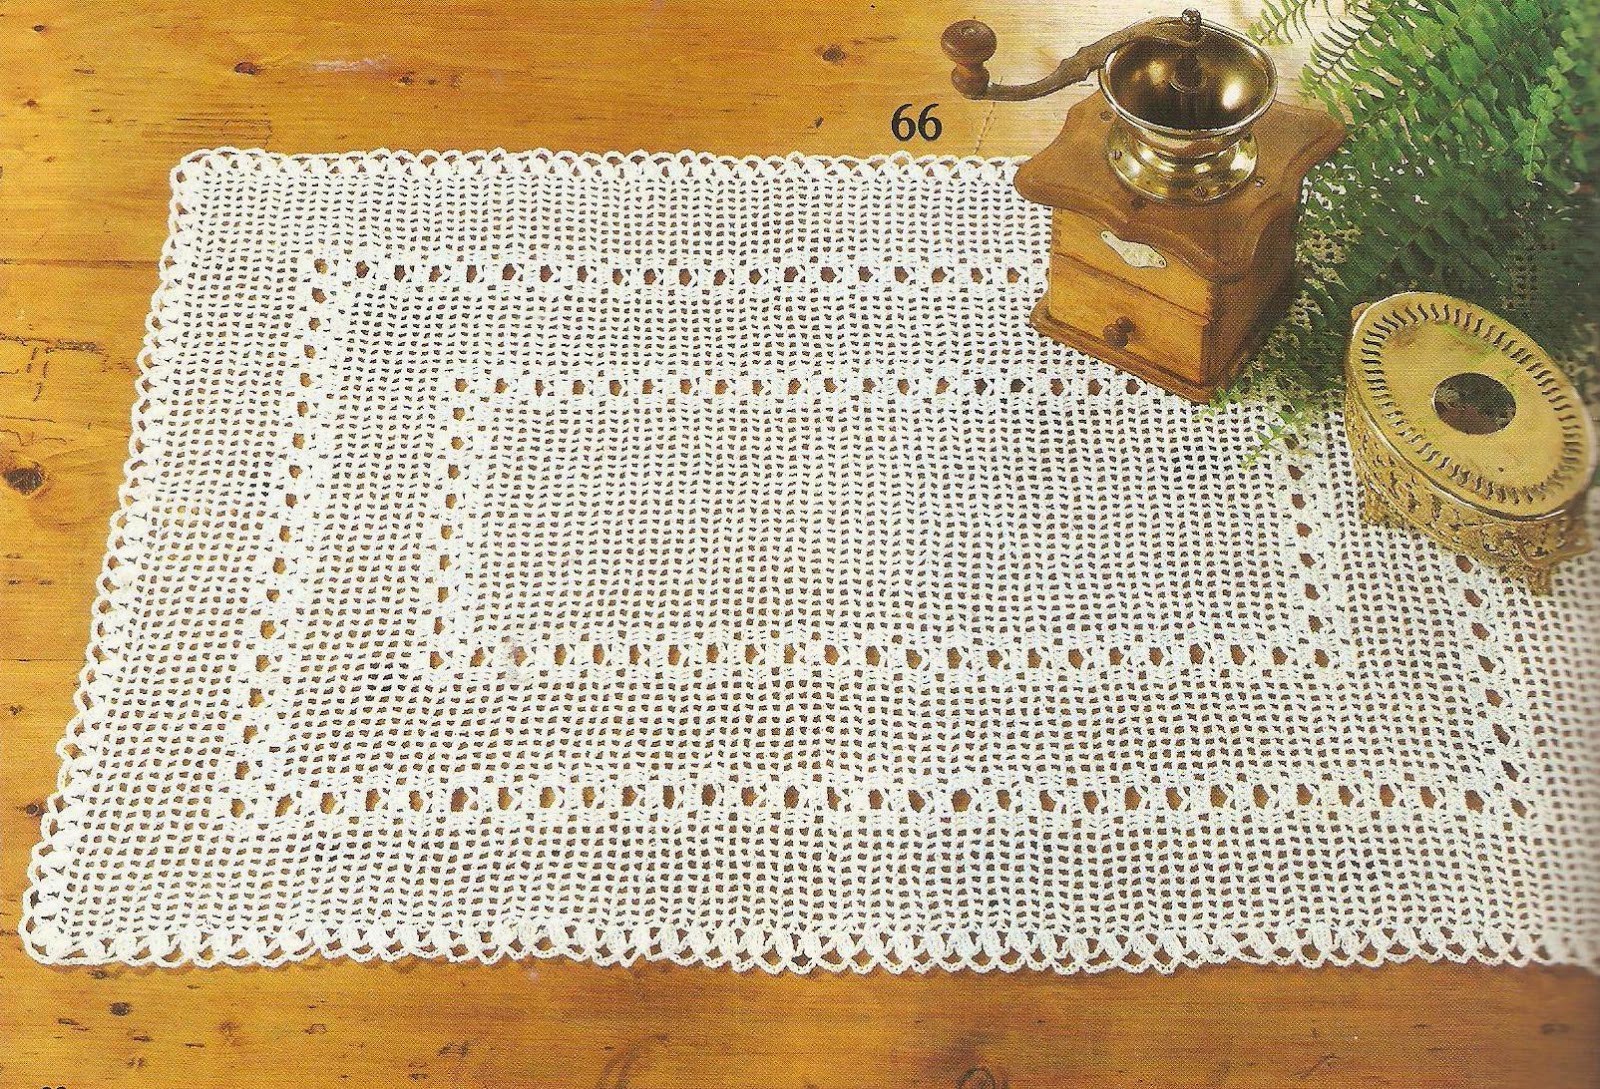 Spiksplinternieuw Vintage knitting free patterns, gratis breipatronen onder andere DW-54